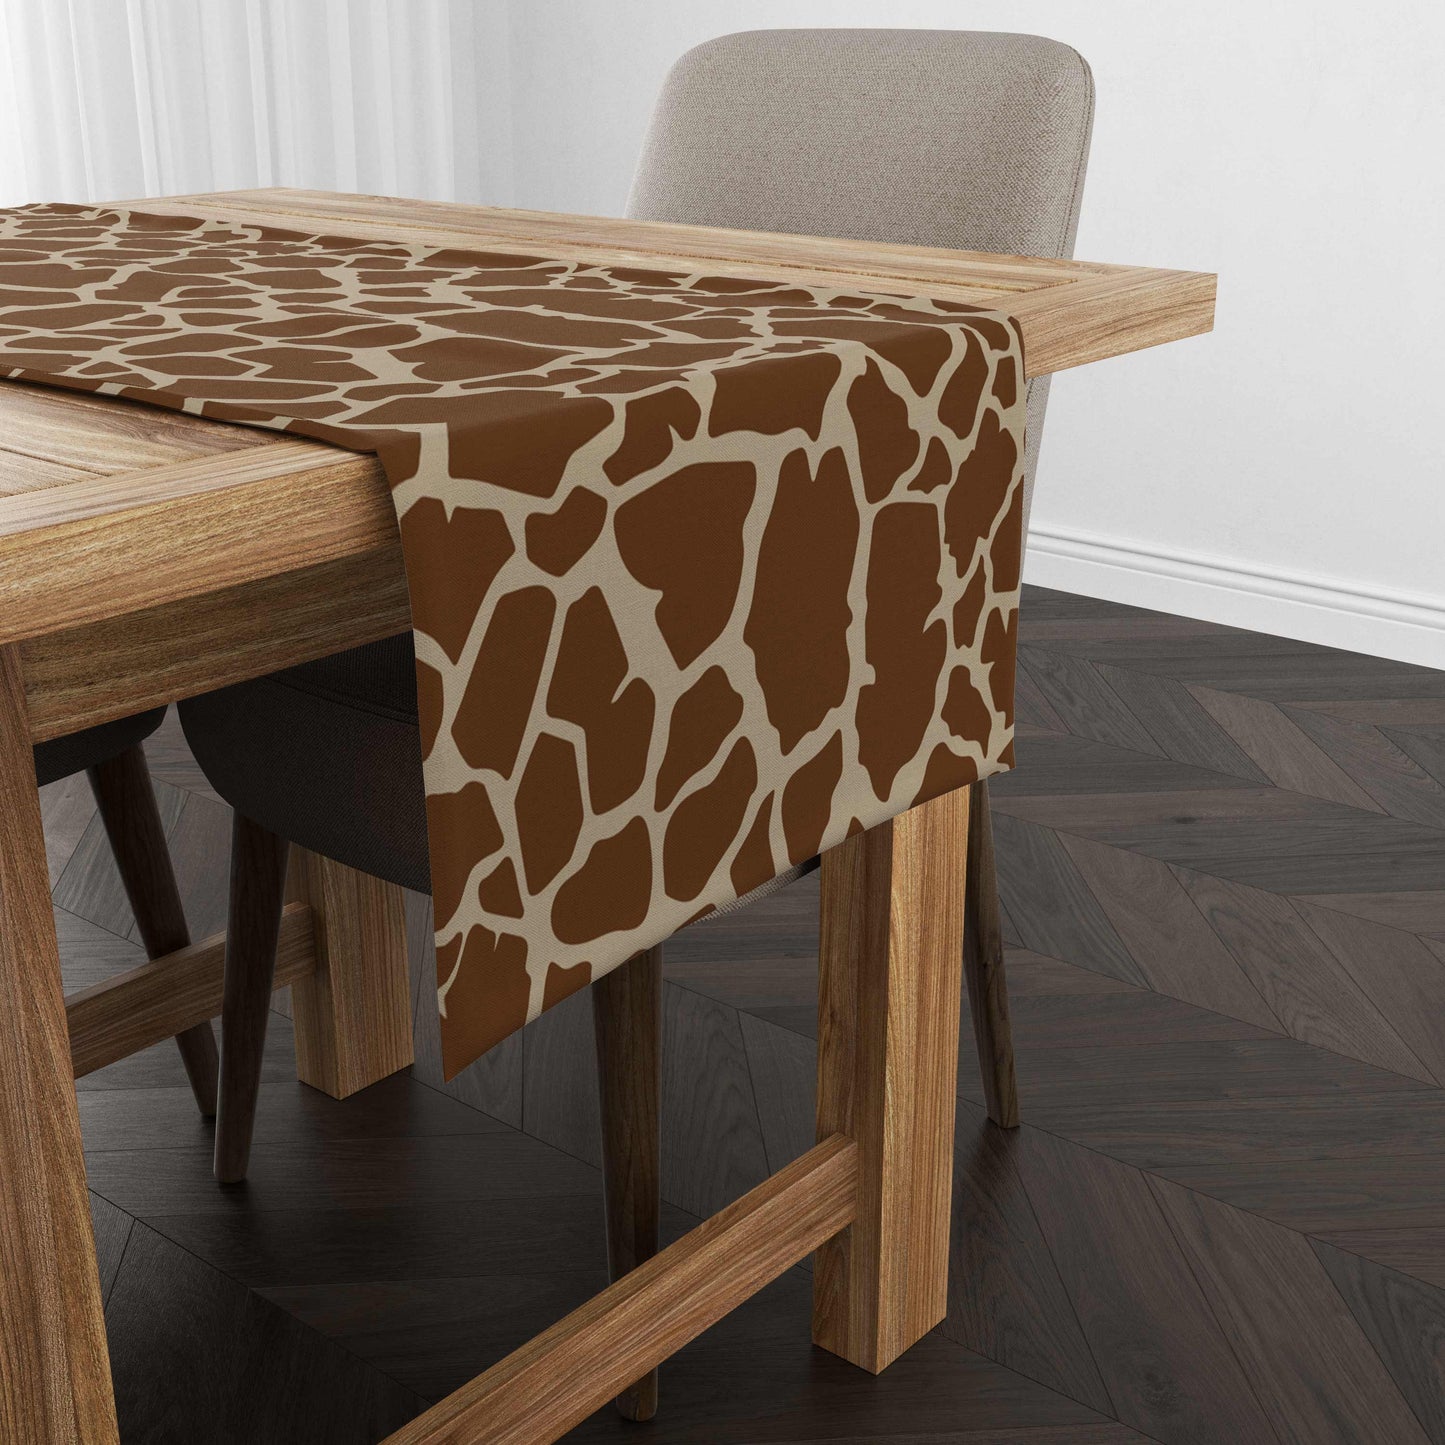 Giraffe Skin Table Runner Trendy Home